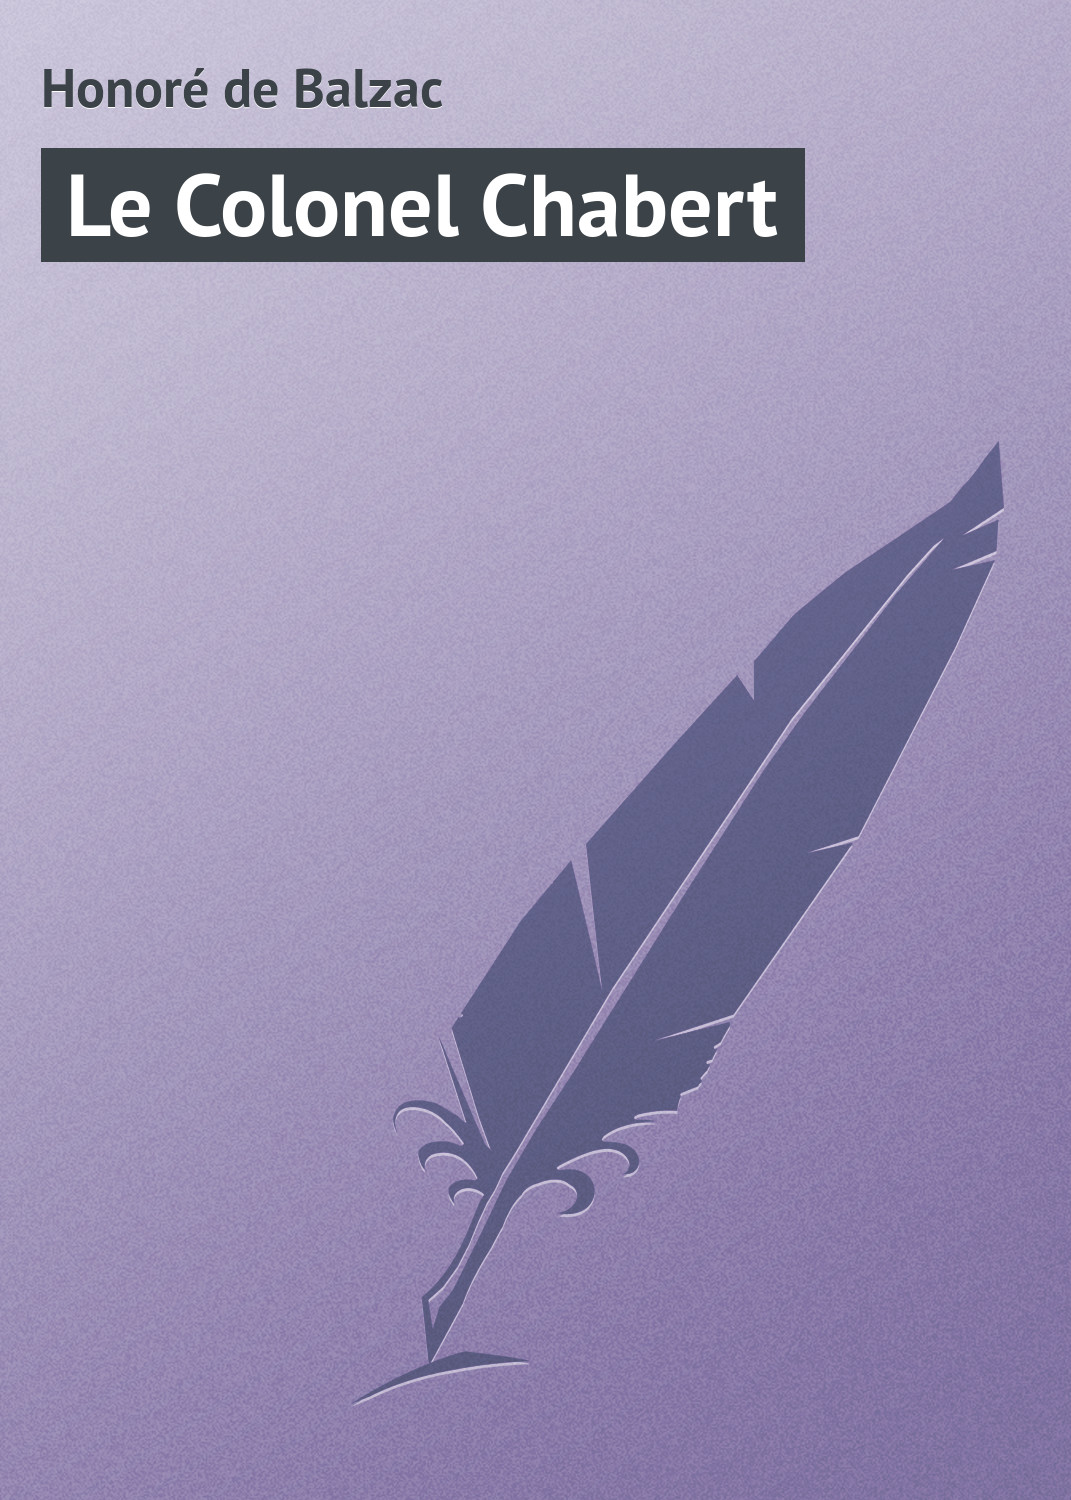 Книга Le Colonel Chabert из серии , созданная Honoré de, может относится к жанру Зарубежная старинная литература, Зарубежная классика. Стоимость электронной книги Le Colonel Chabert с идентификатором 21104742 составляет 5.99 руб.